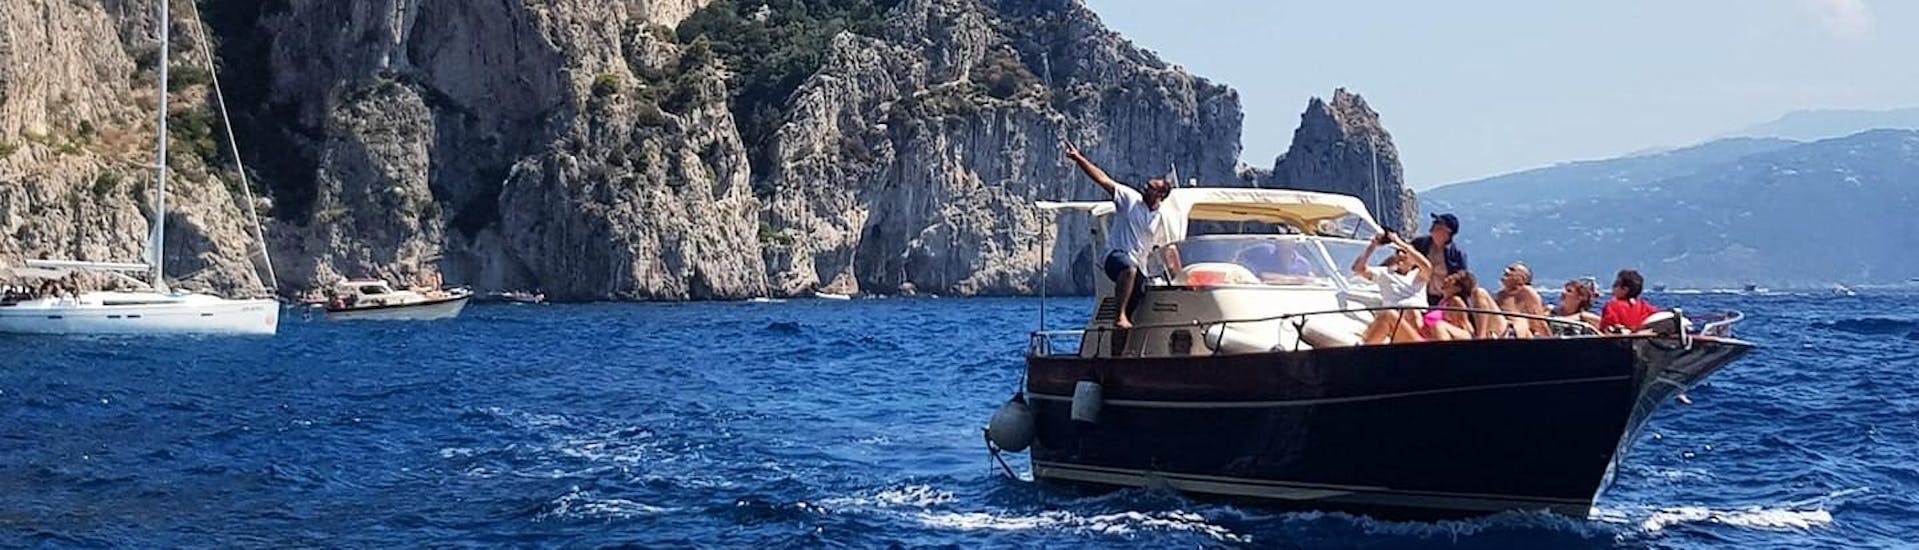 Paseo en barco desde Sorrento a Positano y Amalfi.